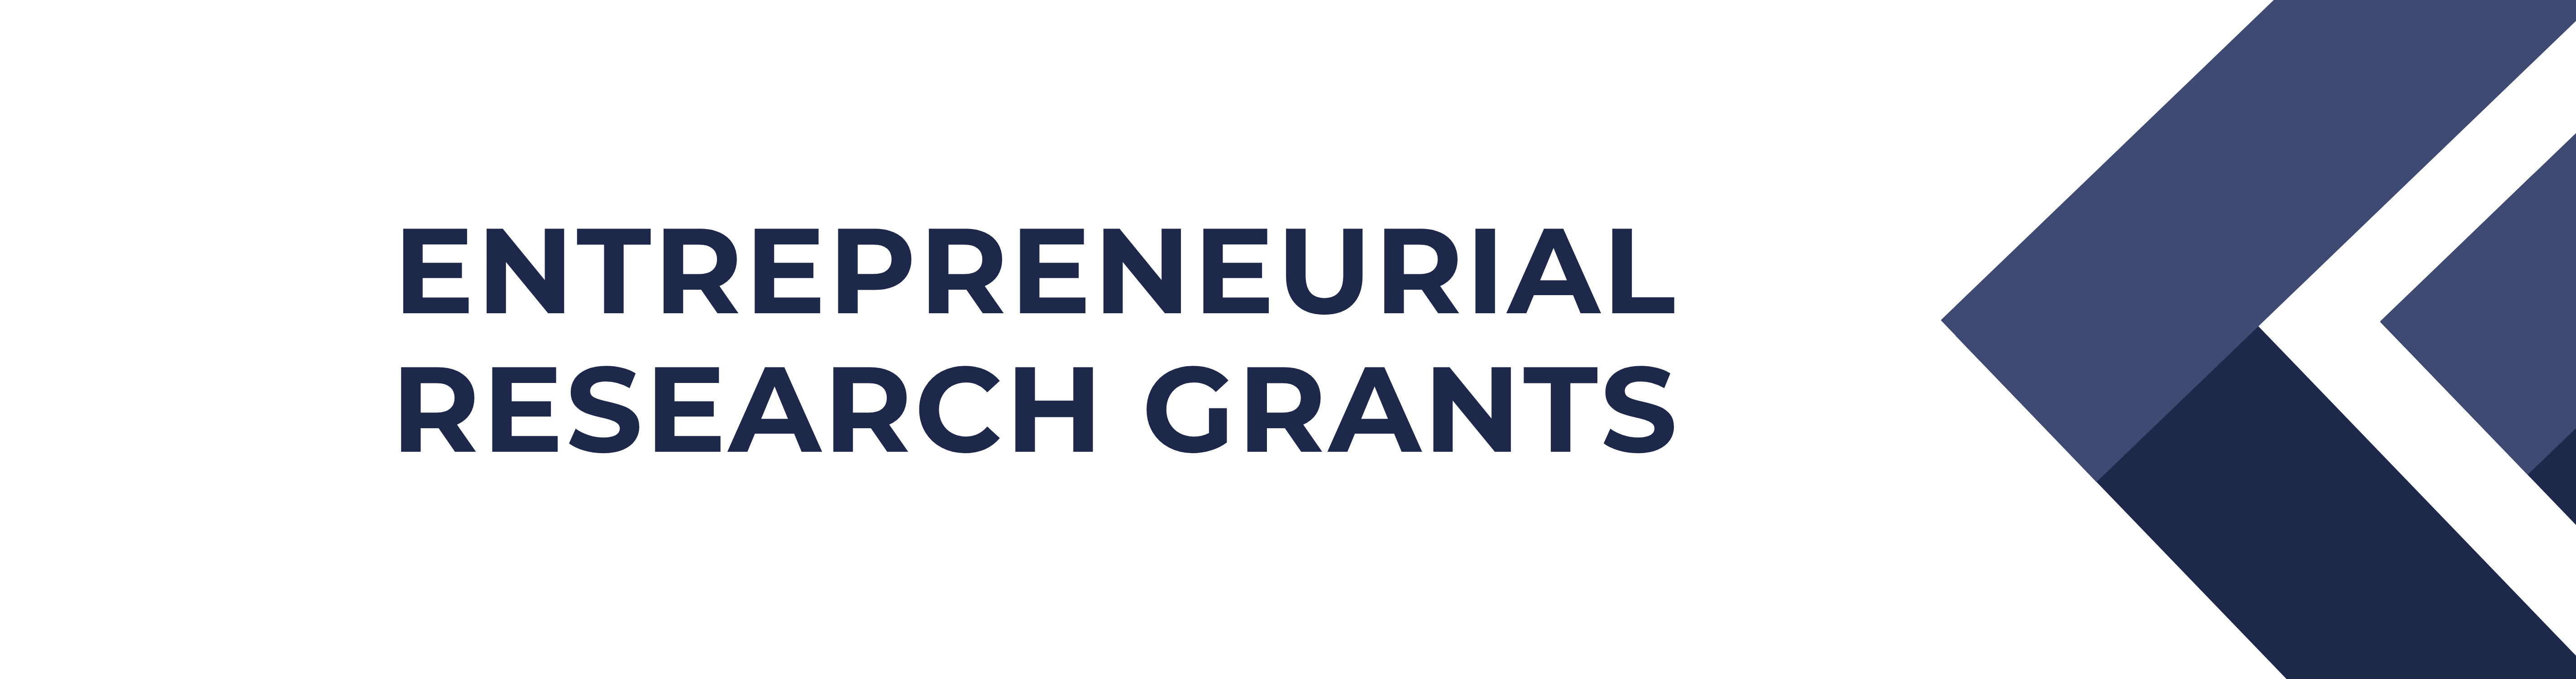 Entrepreneurial Research Grants